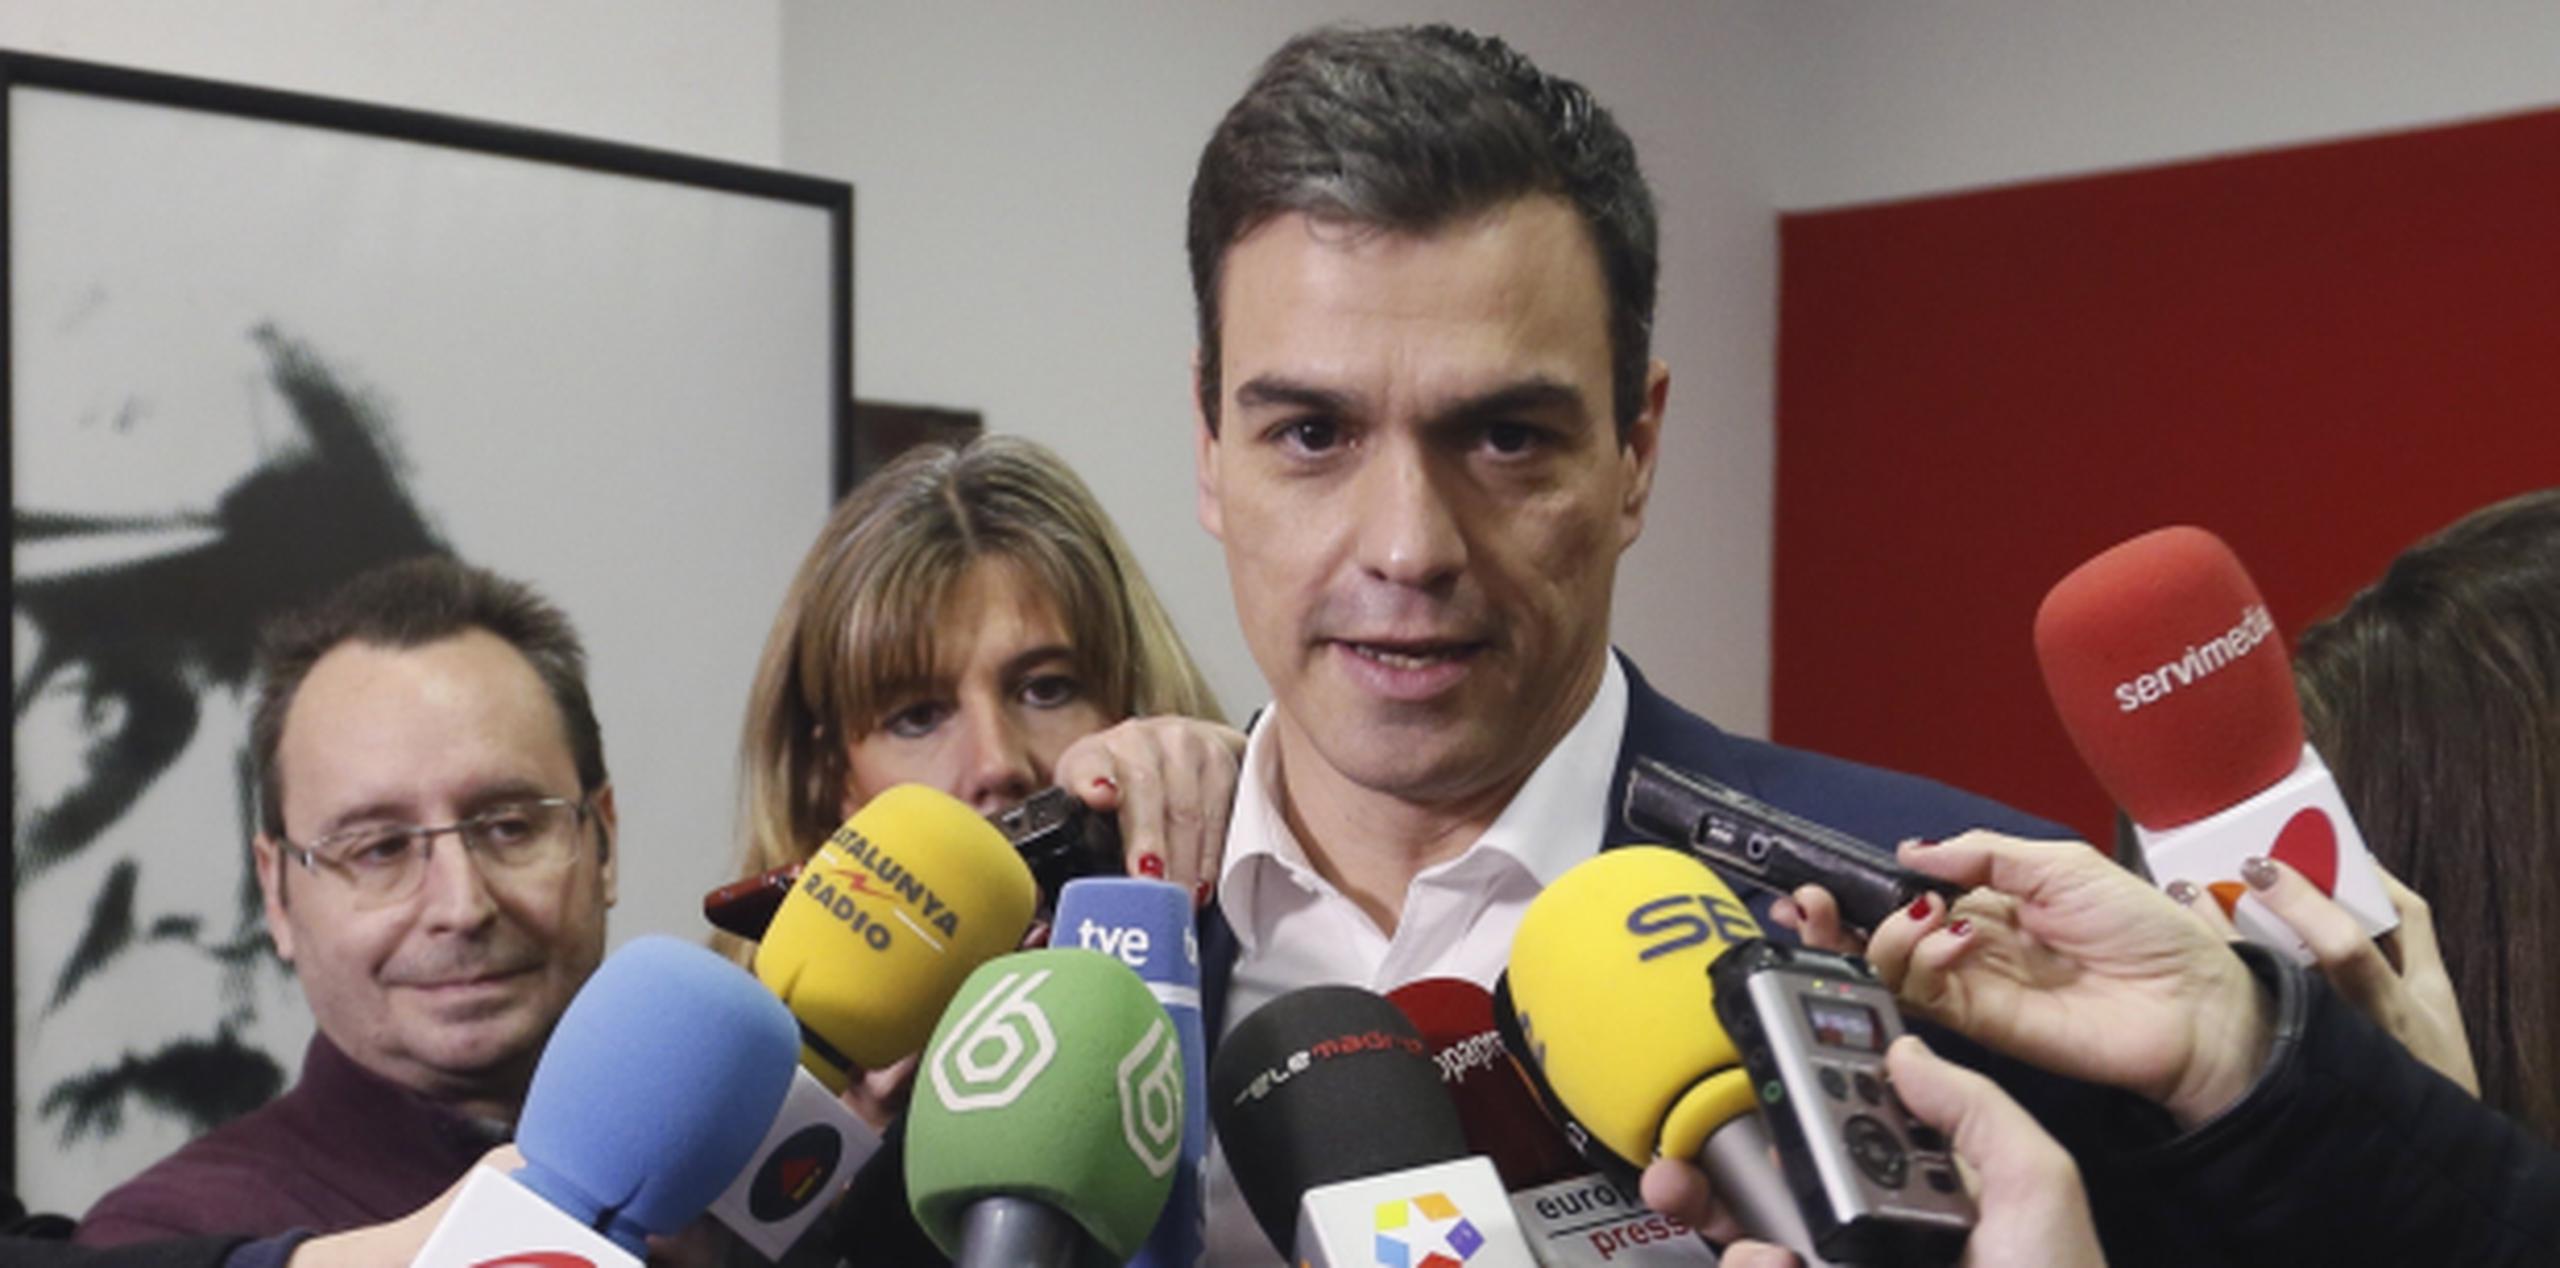 Los principales partidos opositores se han negado a apoyar o abstenerse en la investidura de Sánchez, con lo que se prevé que el candidato socialista no sea investido presidente ni en una segunda votación. (EFE)